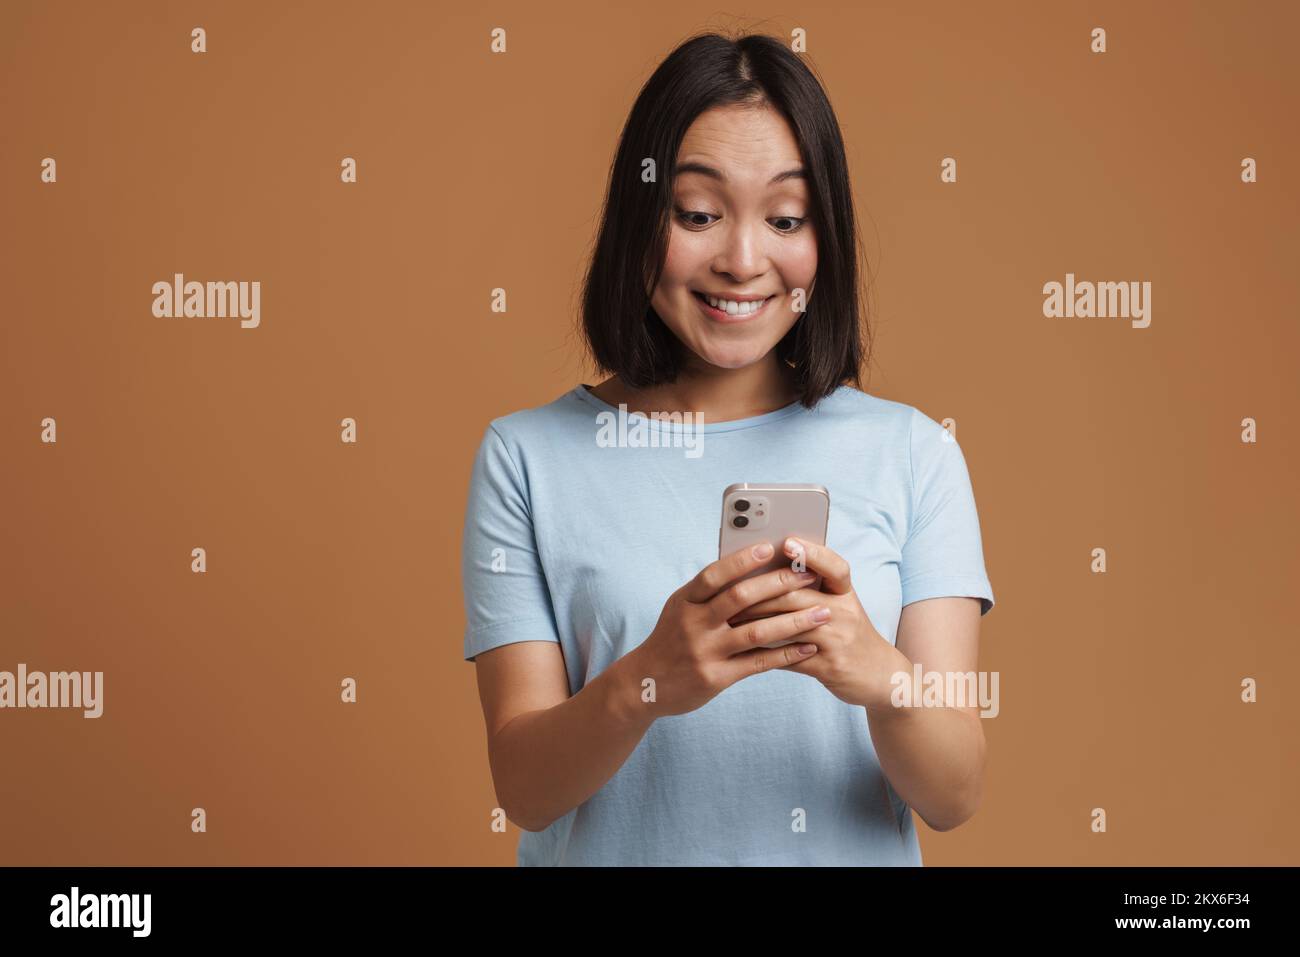 Joven asiática con una camiseta que se ríe mientras utiliza un teléfono móvil aislado sobre fondo beige Foto de stock